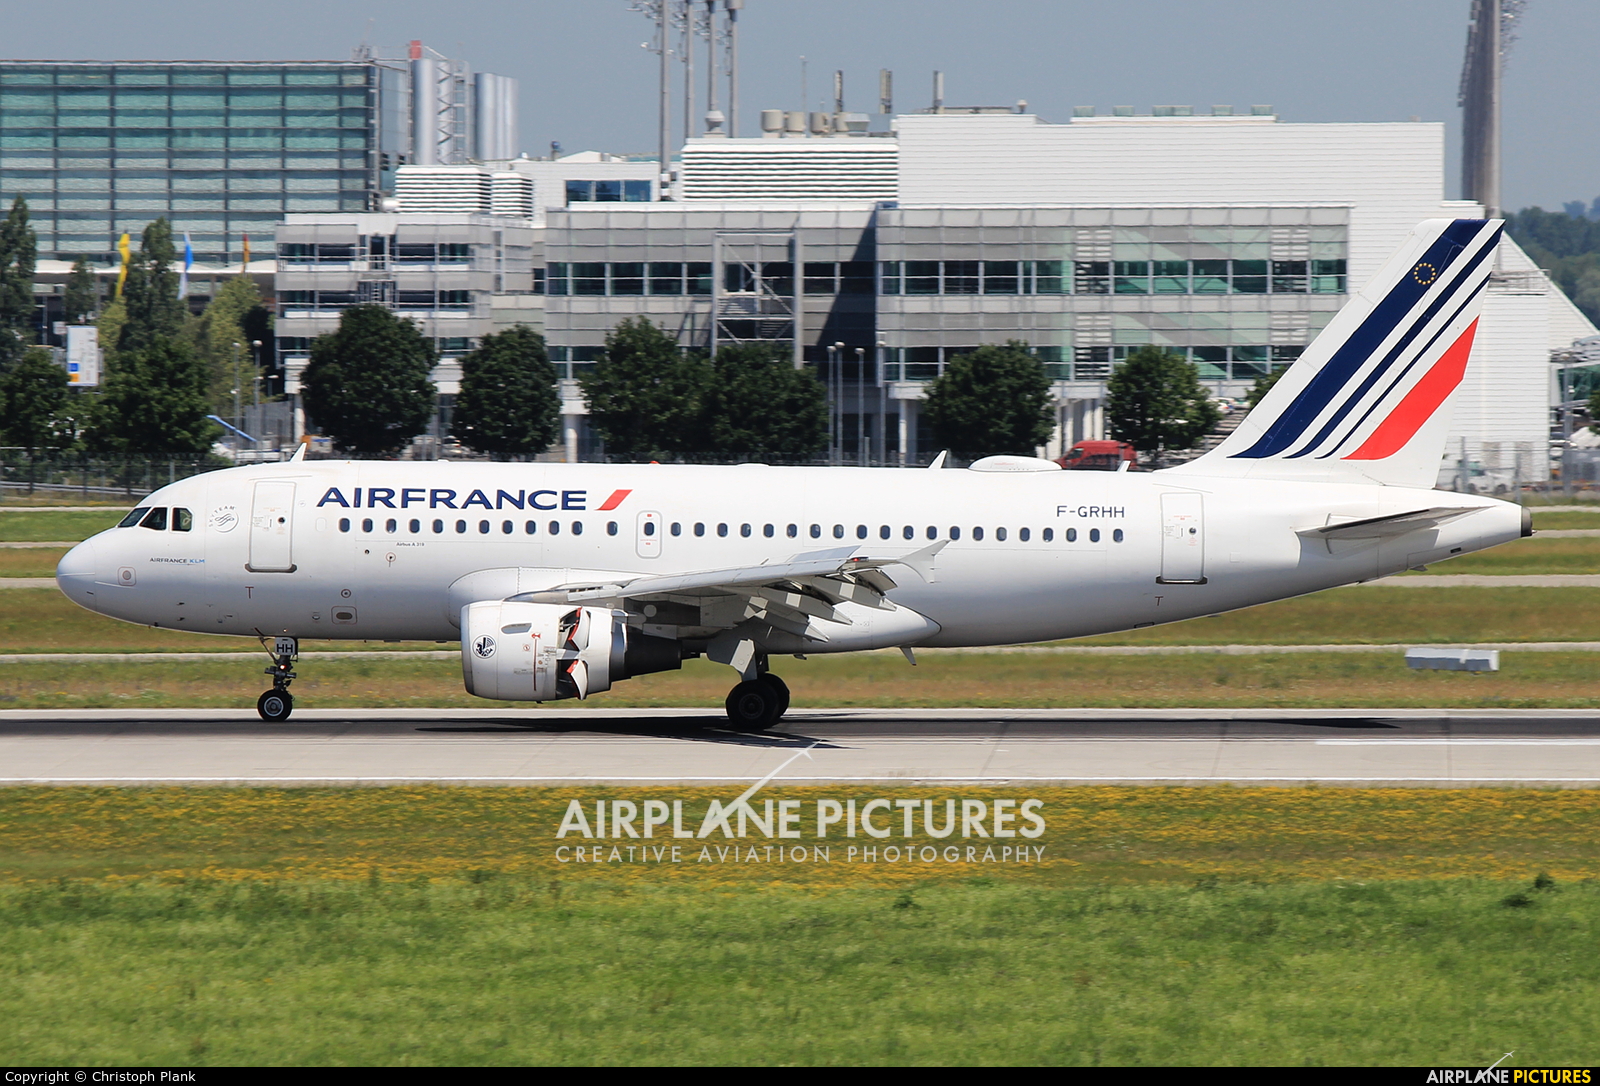 Air France F-GRHH aircraft at Munich